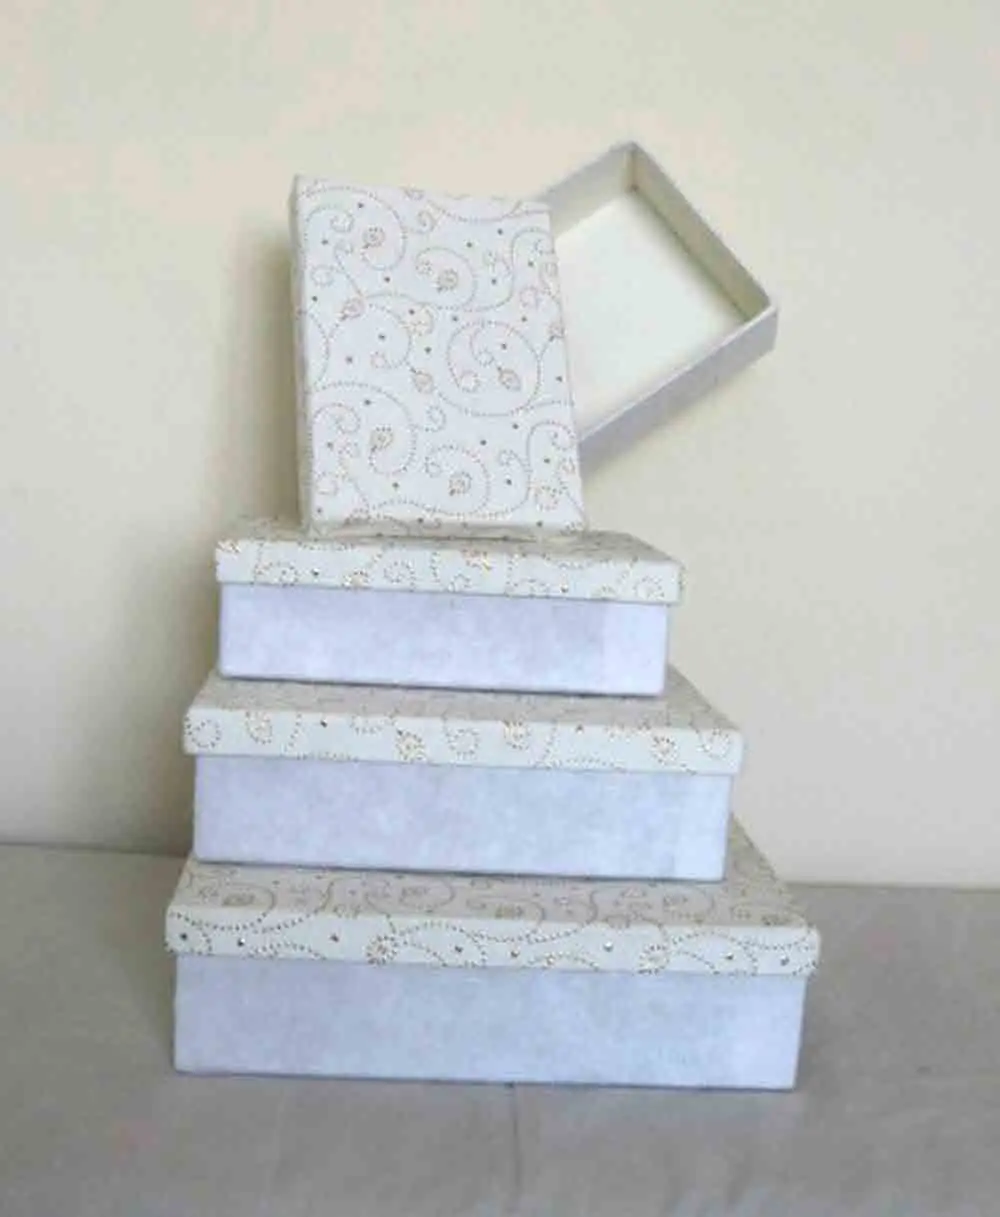 Personalizado hecho a mano reciclado y metálico impreso papel de algodón caja de embalaje de regalo forma rectangular regalos de boda y fiesta